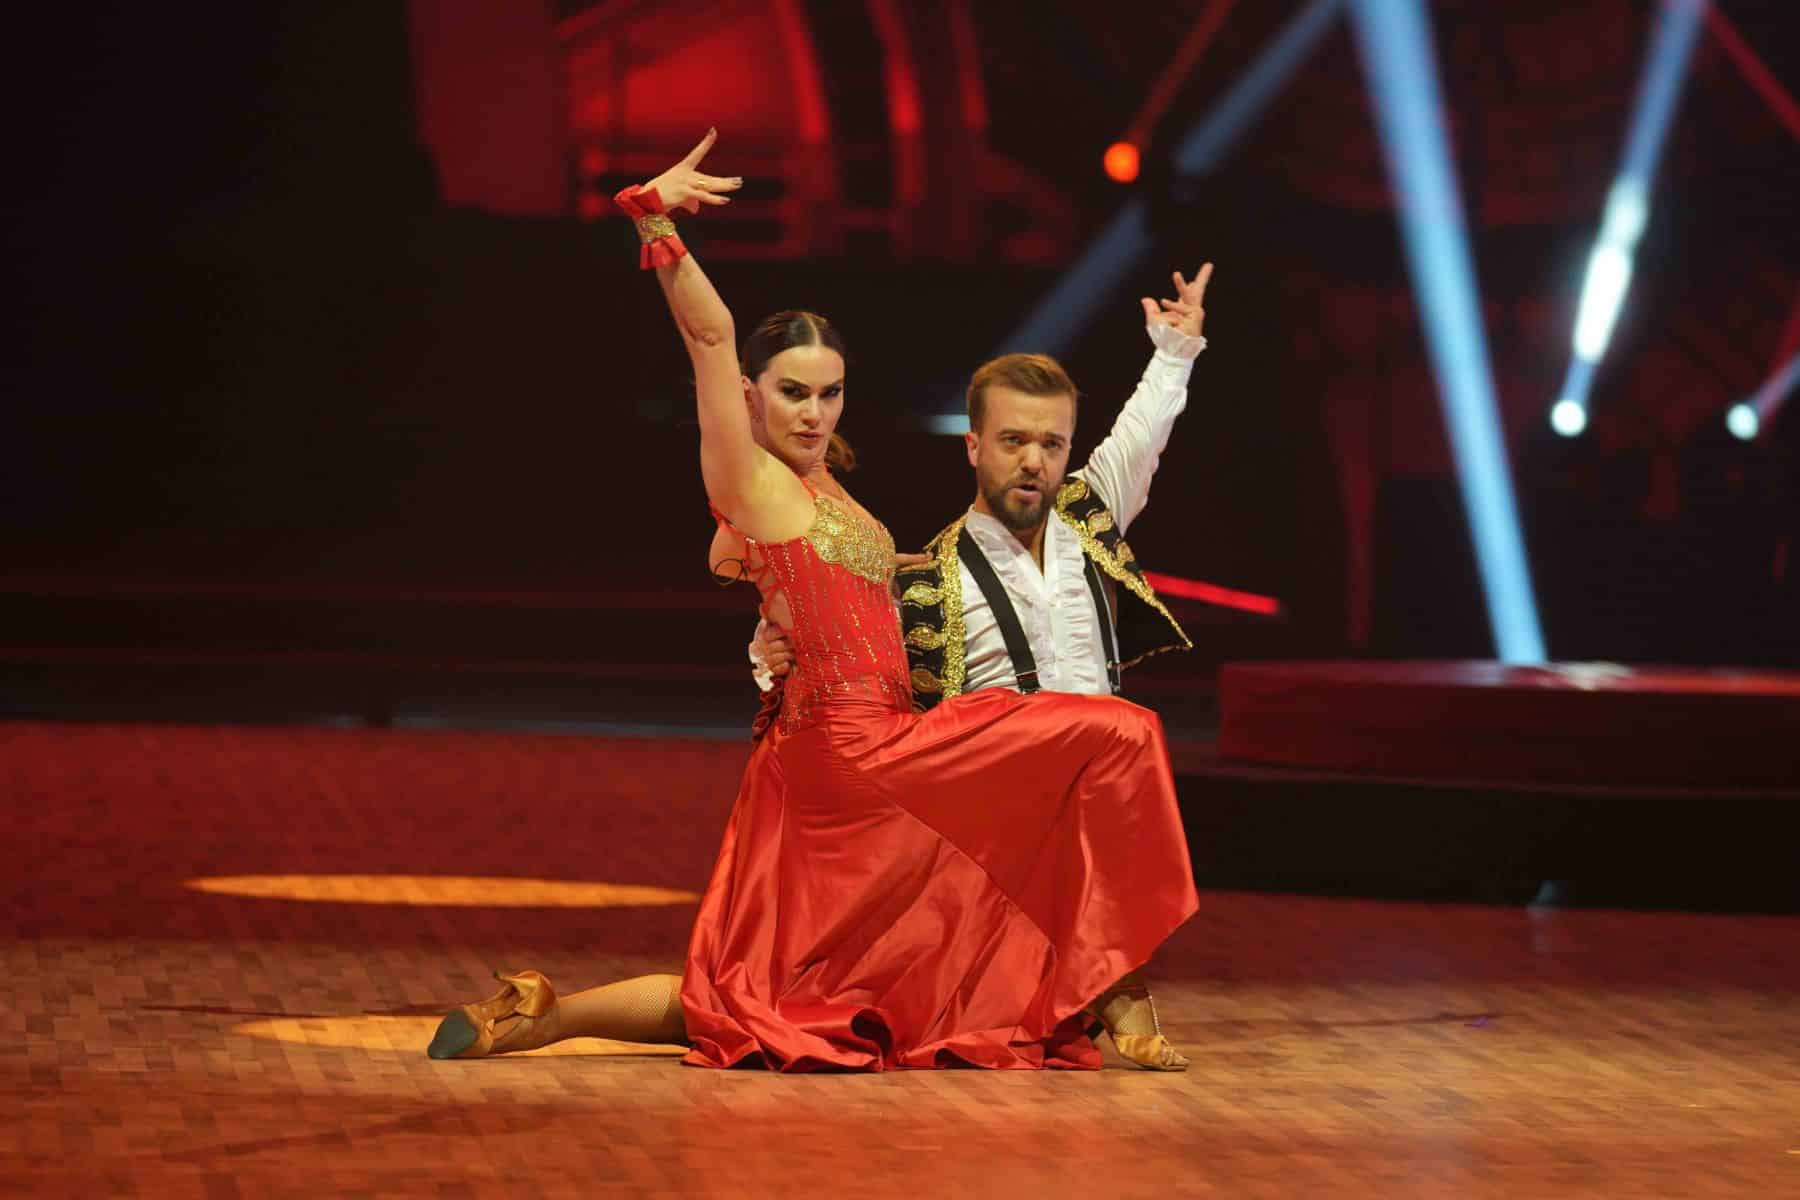 14.11.2022 Tänzerin Renata Lusin und Leichtathlet Mathias Mester bei der Show Let s Dance - Die Live-Tournee 2022.